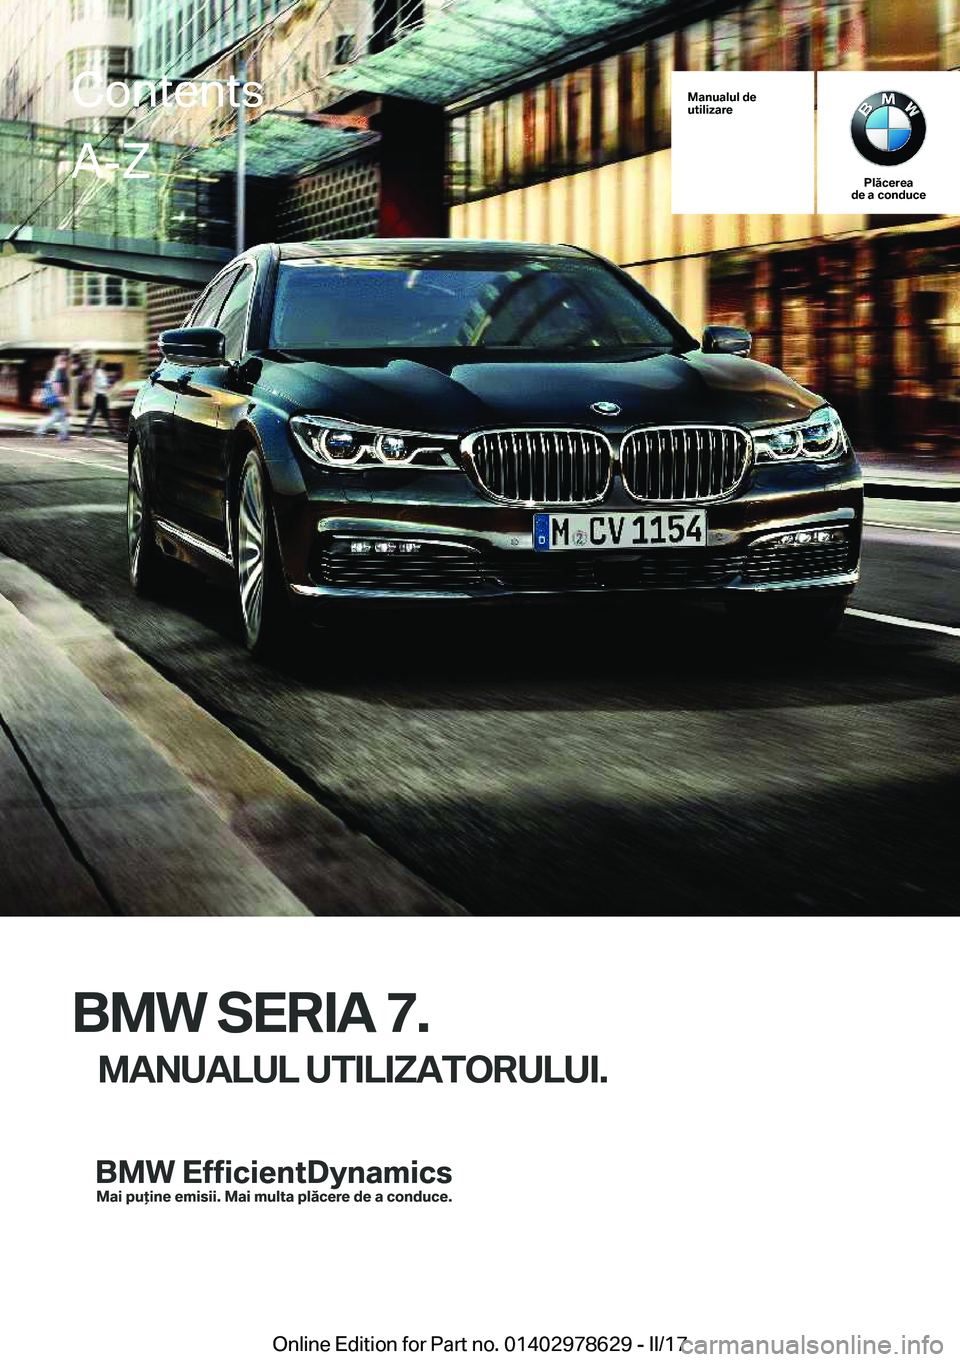 BMW 7 SERIES 2018  Ghiduri De Utilizare (in Romanian) �M�a�n�u�a�l�u�l��d�e
�u�t�i�l�i�z�a�r�e
�P�l�ă�c�e�r�e�a
�d�e��a��c�o�n�d�u�c�e
�B�M�W��S�E�R�I�A��7�.
�M�A�N�U�A�L�U�L��U�T�I�L�I�Z�A�T�O�R�U�L�U�I�.
�C�o�n�t�e�n�t�s�A�-�Z
�O�n�l�i�n�e� �E�d